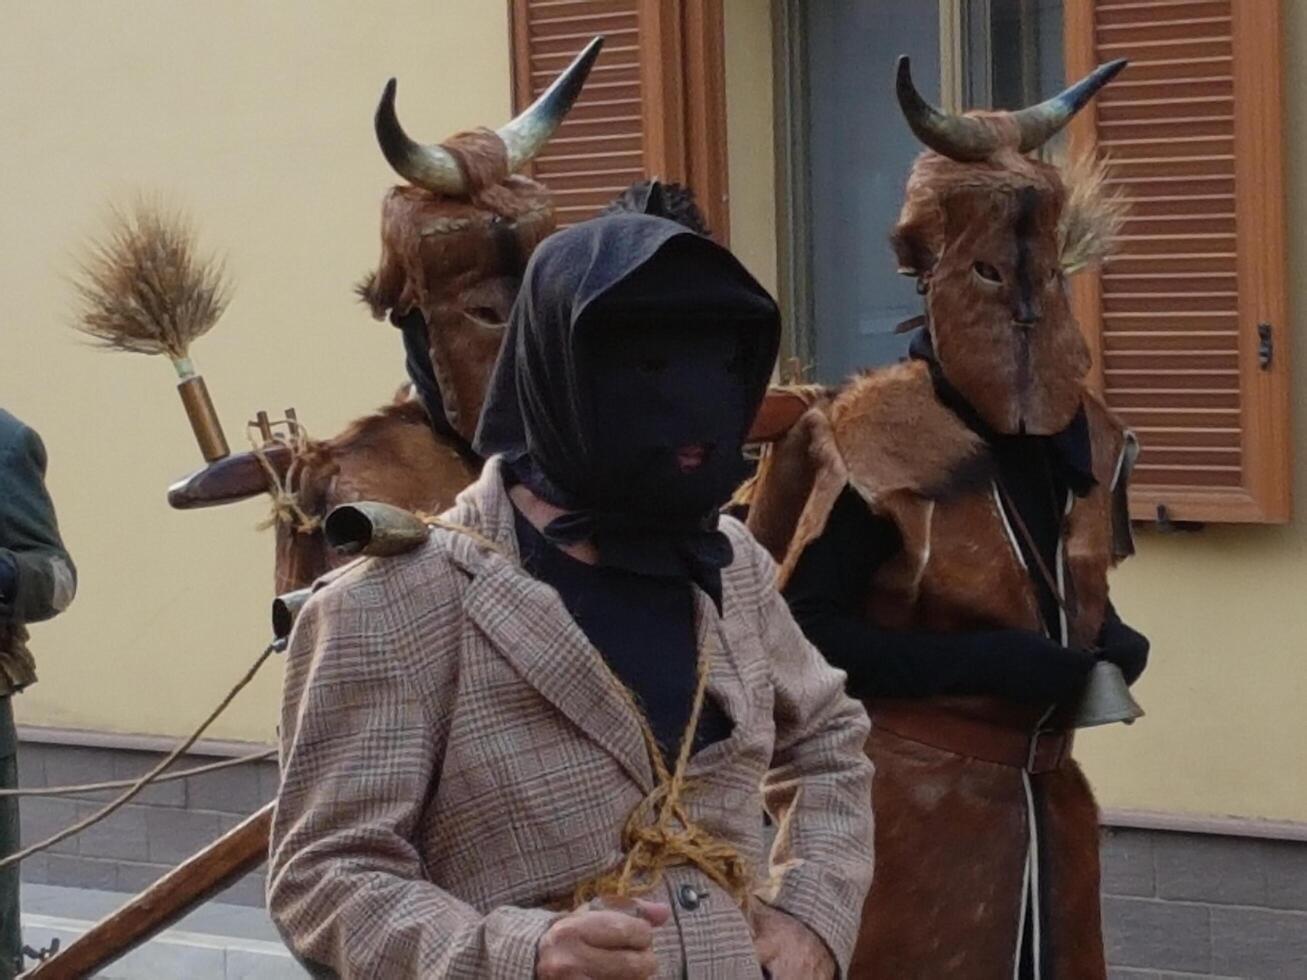 ancien rites, masques et traditions dans sardaigne. photo